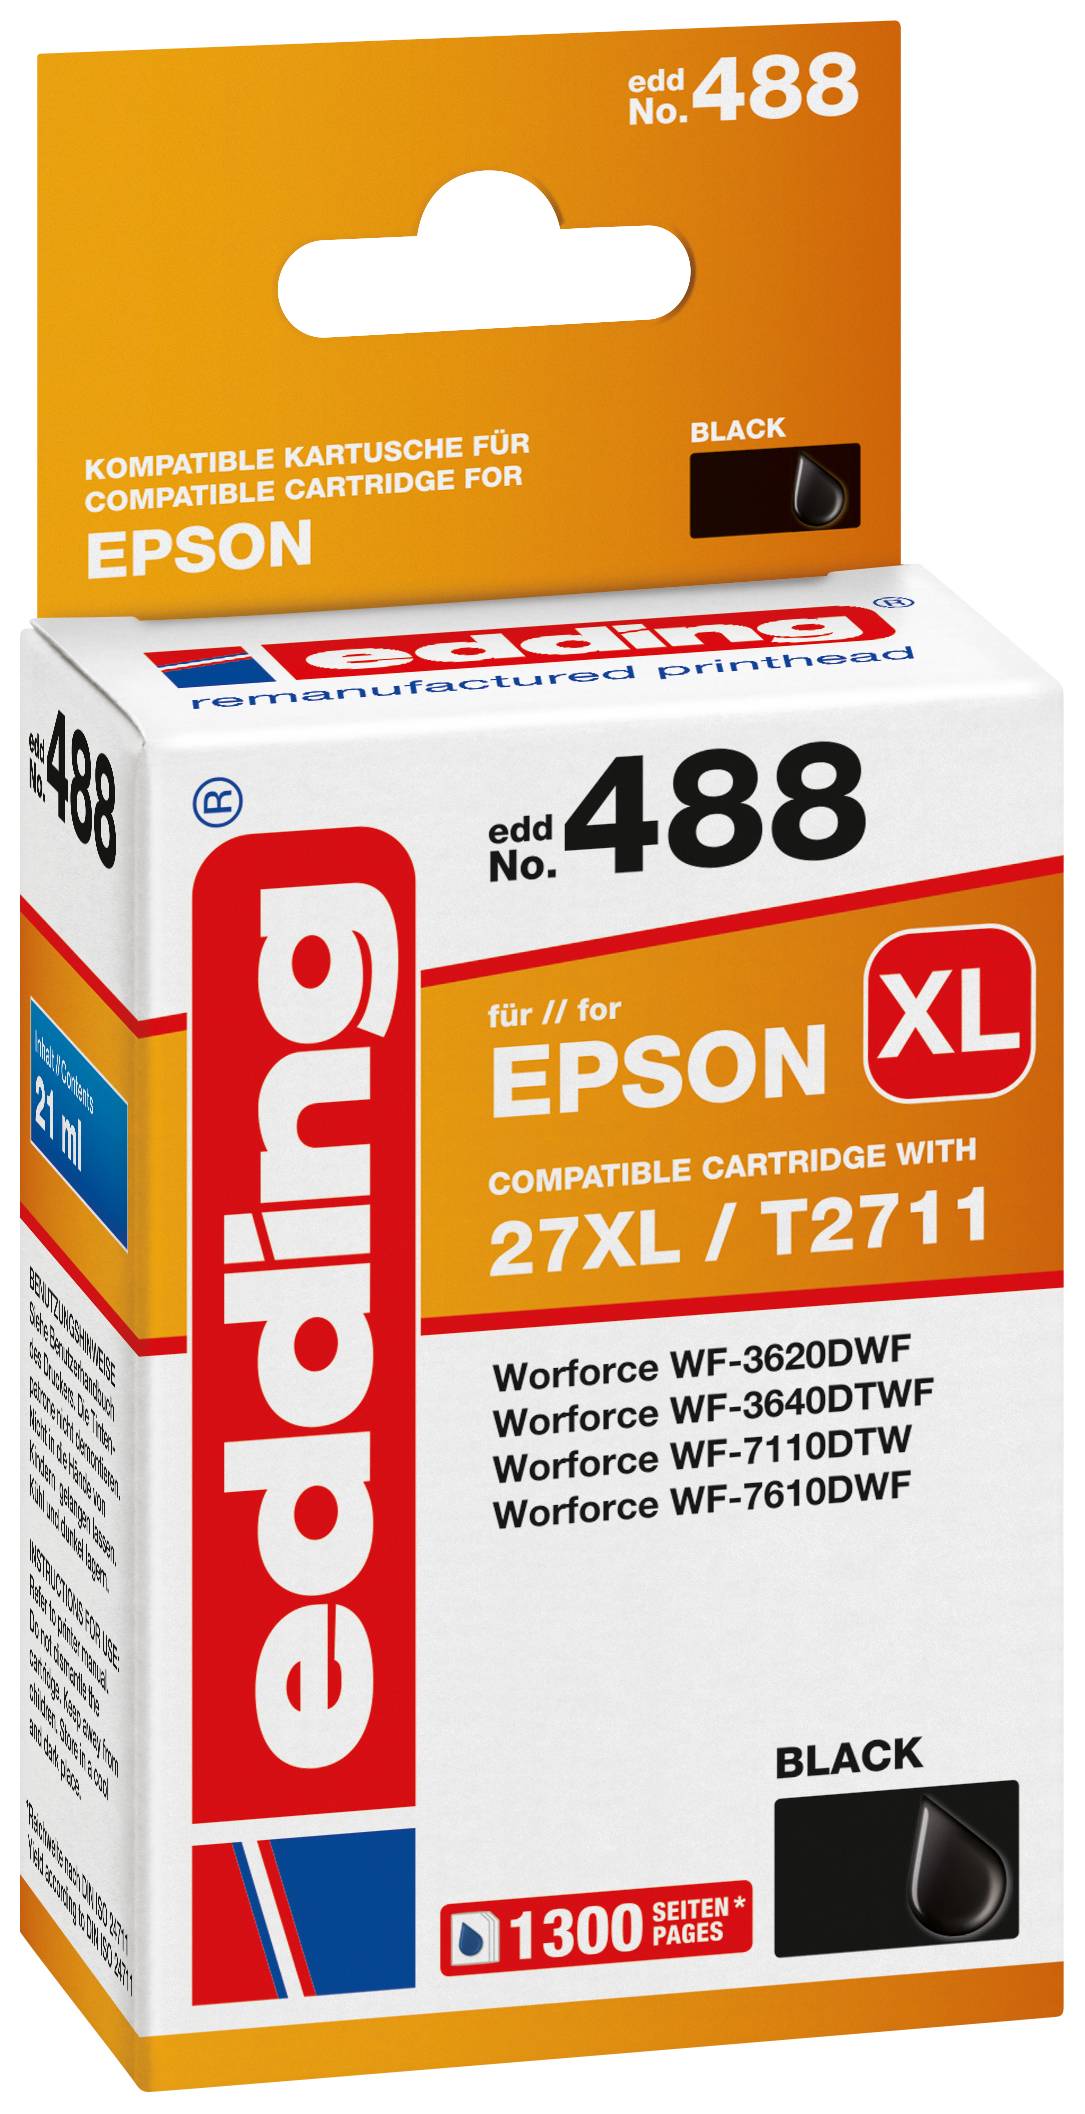 EDDING Tintenpatrone ersetzt Epson 27XL / T2711 Kompatibel einzeln Schwarz EDD-488 18-488